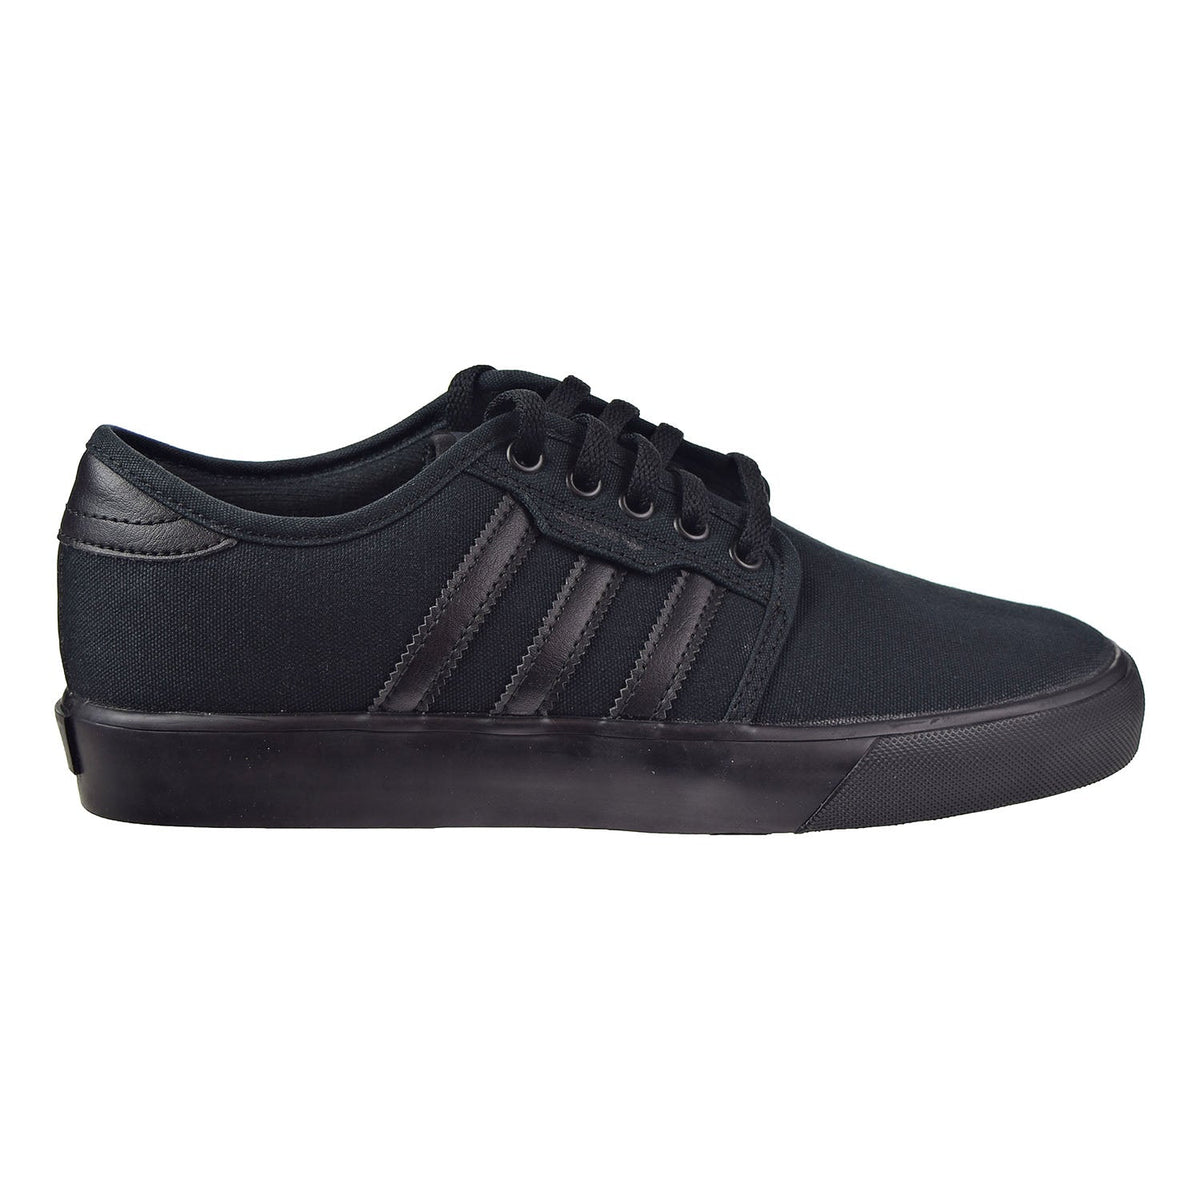 Adidas J Big Kid's Shoes Core Black/Core Black/Core Black – Sports Plaza NY